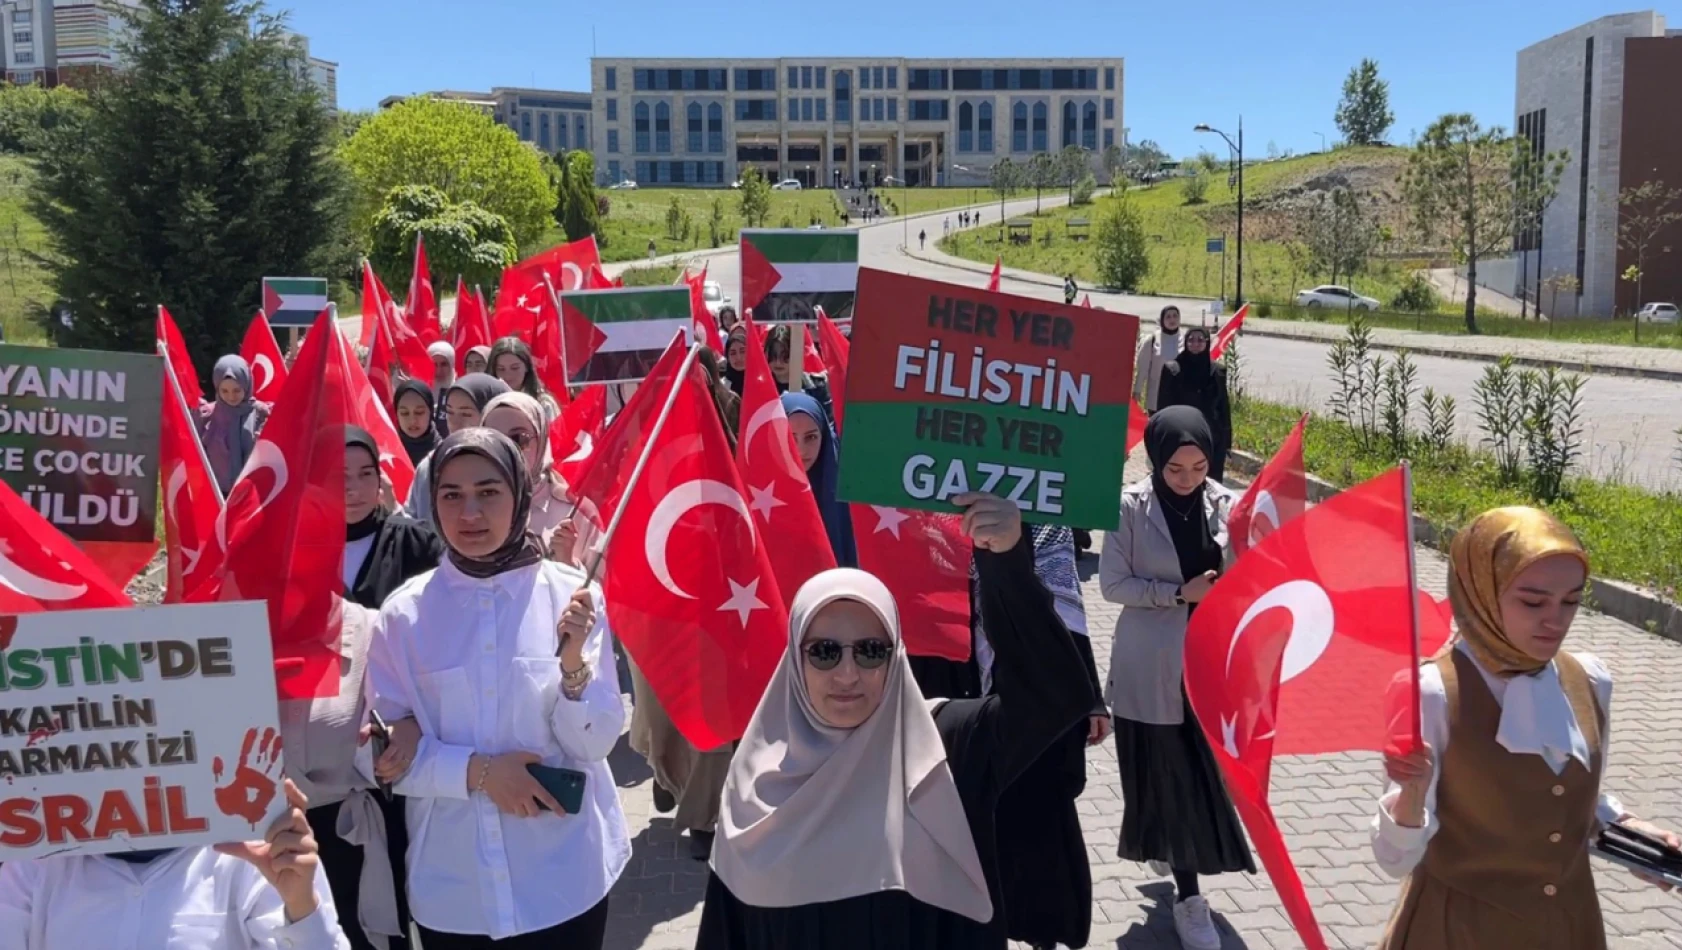 Filistin için destek yürüyüşü düzenlendi